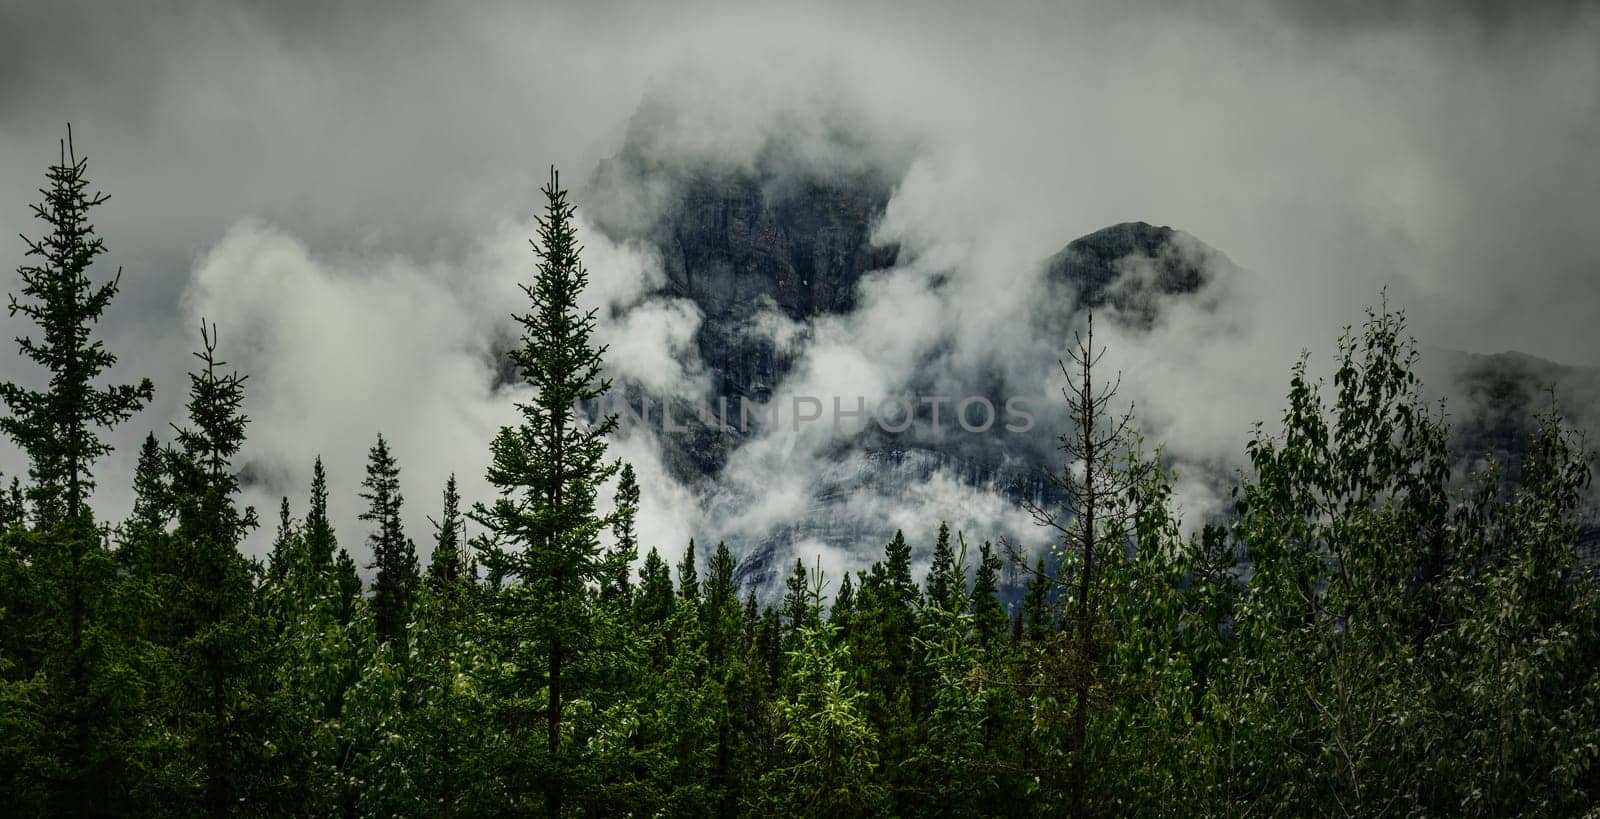 Banff Peaks in Mountain Mist by lisaldw